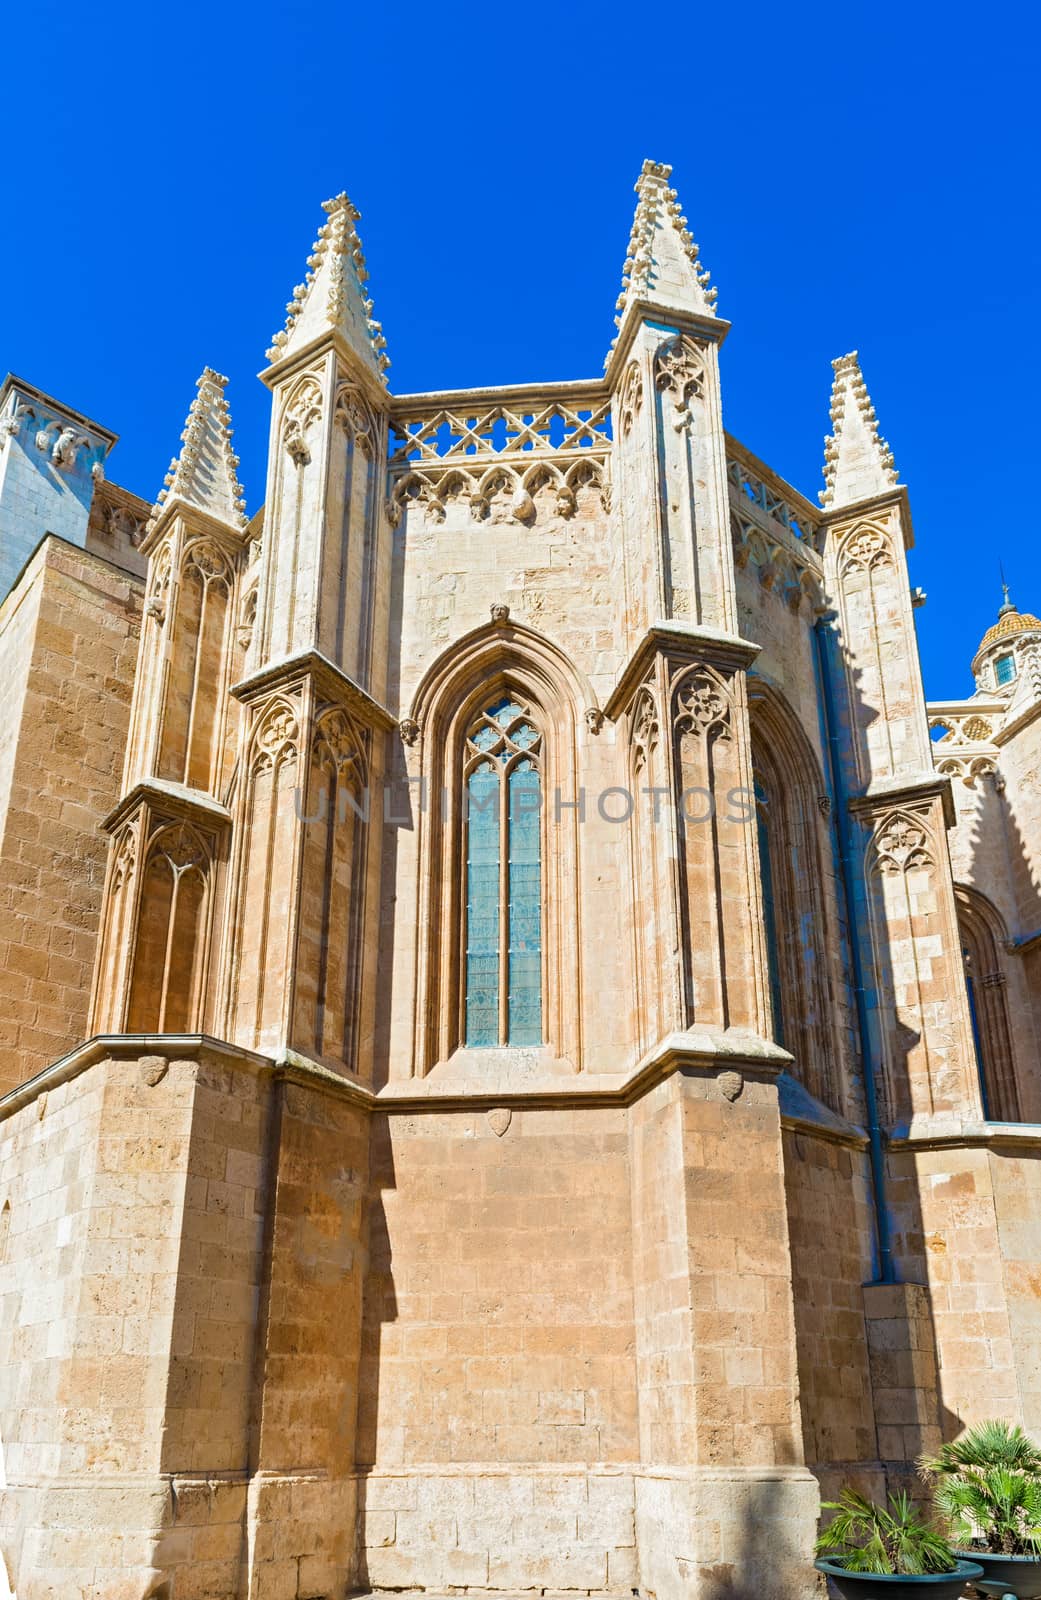 Cathedral of Saint Mary of Tarragona, Catalonia, Spain